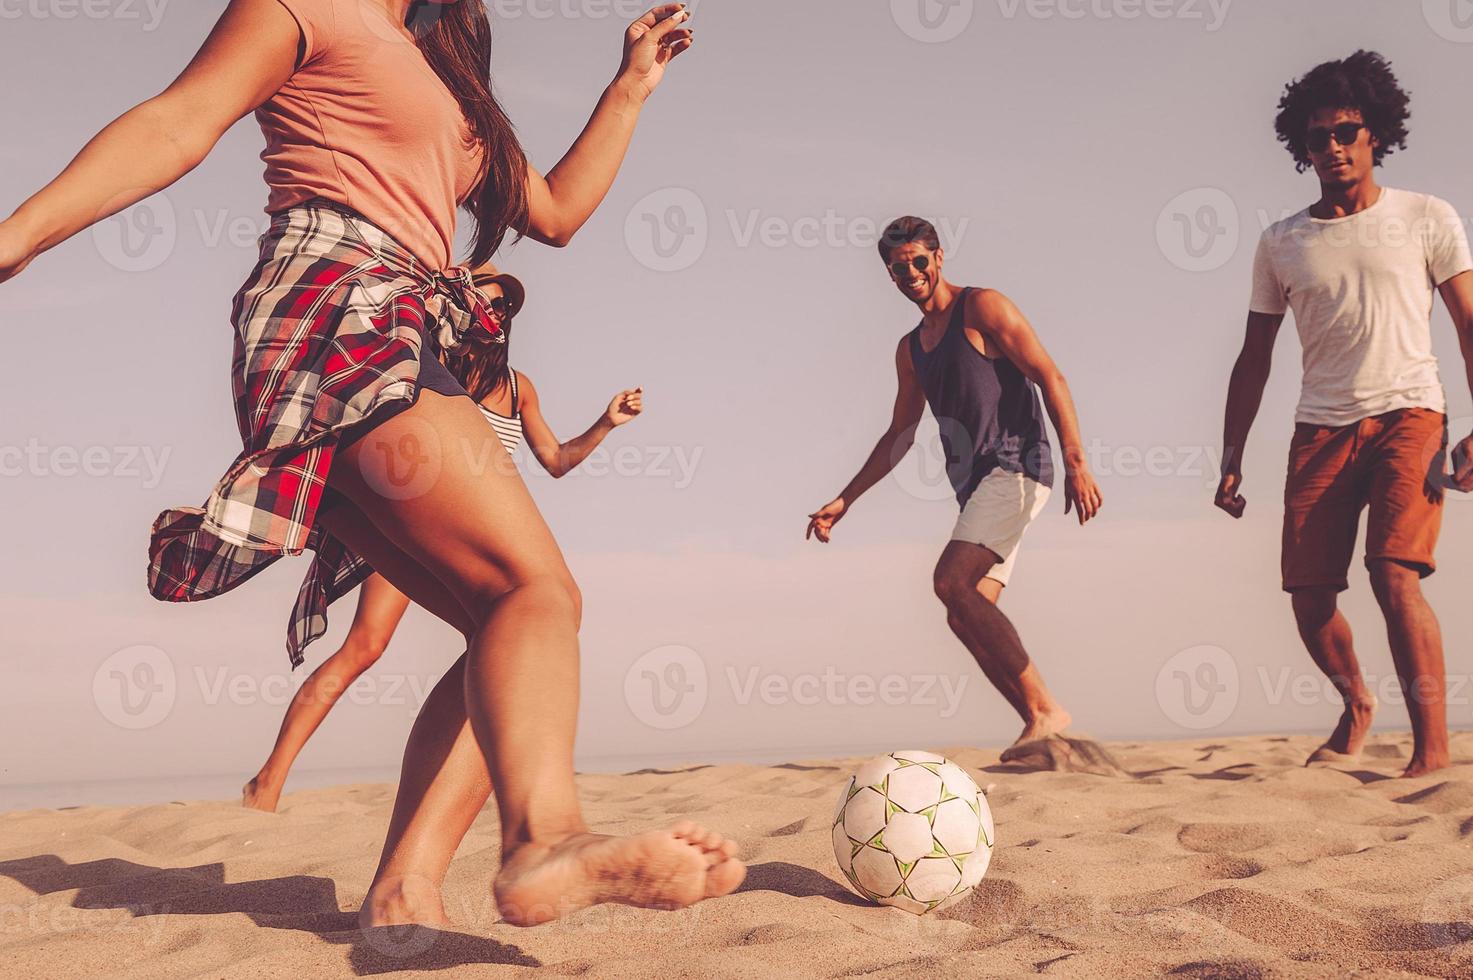 diversión en la playa grupo de jóvenes alegres jugando con una pelota de fútbol en la playa foto